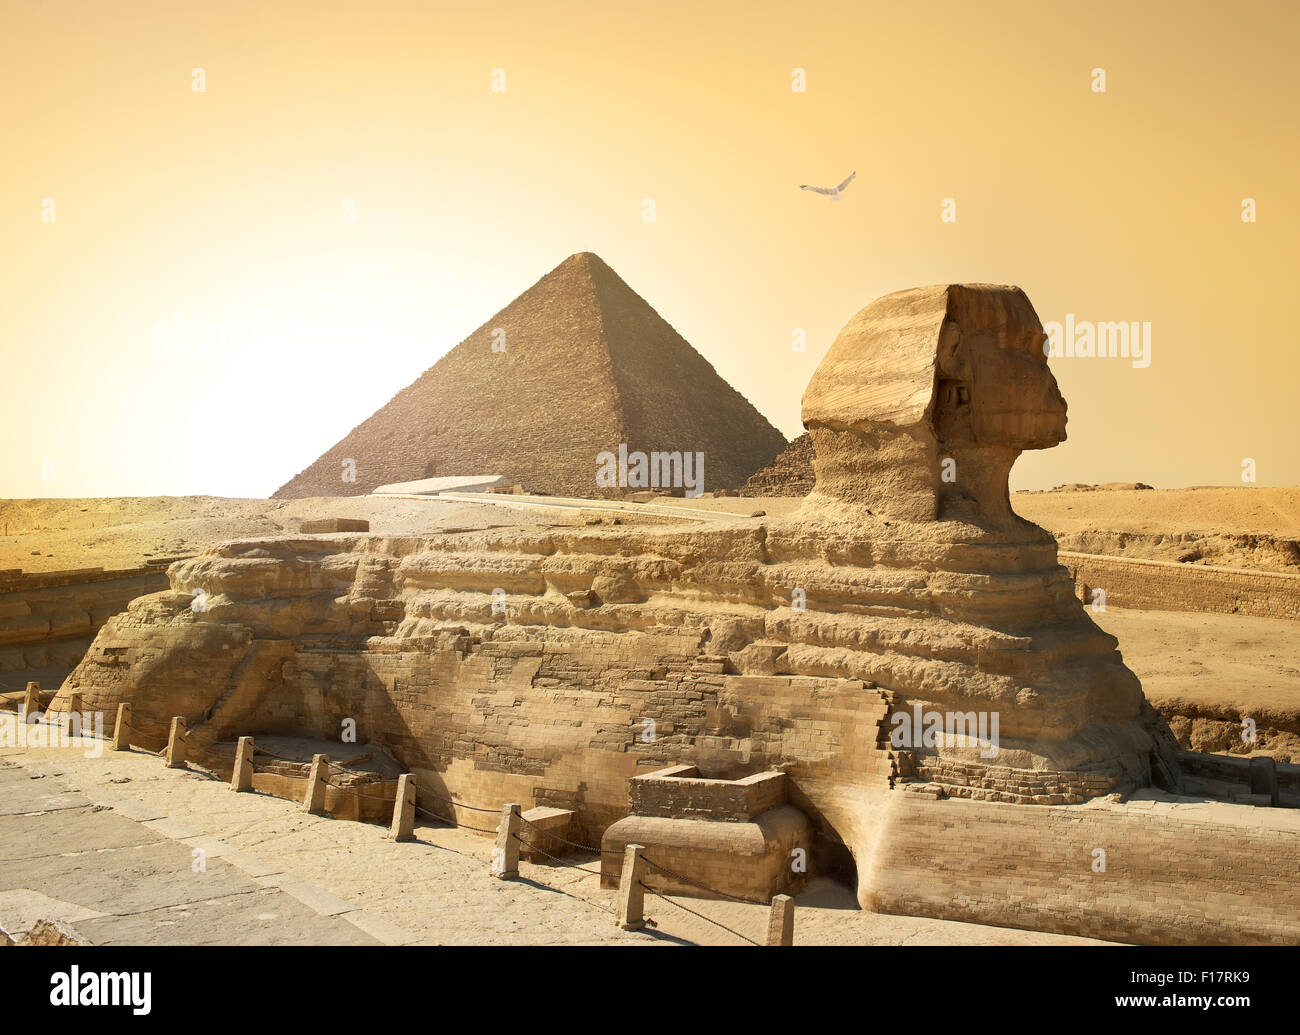 A través de la esfinge y la pirámide de aves en el desierto egipcio Foto de stock